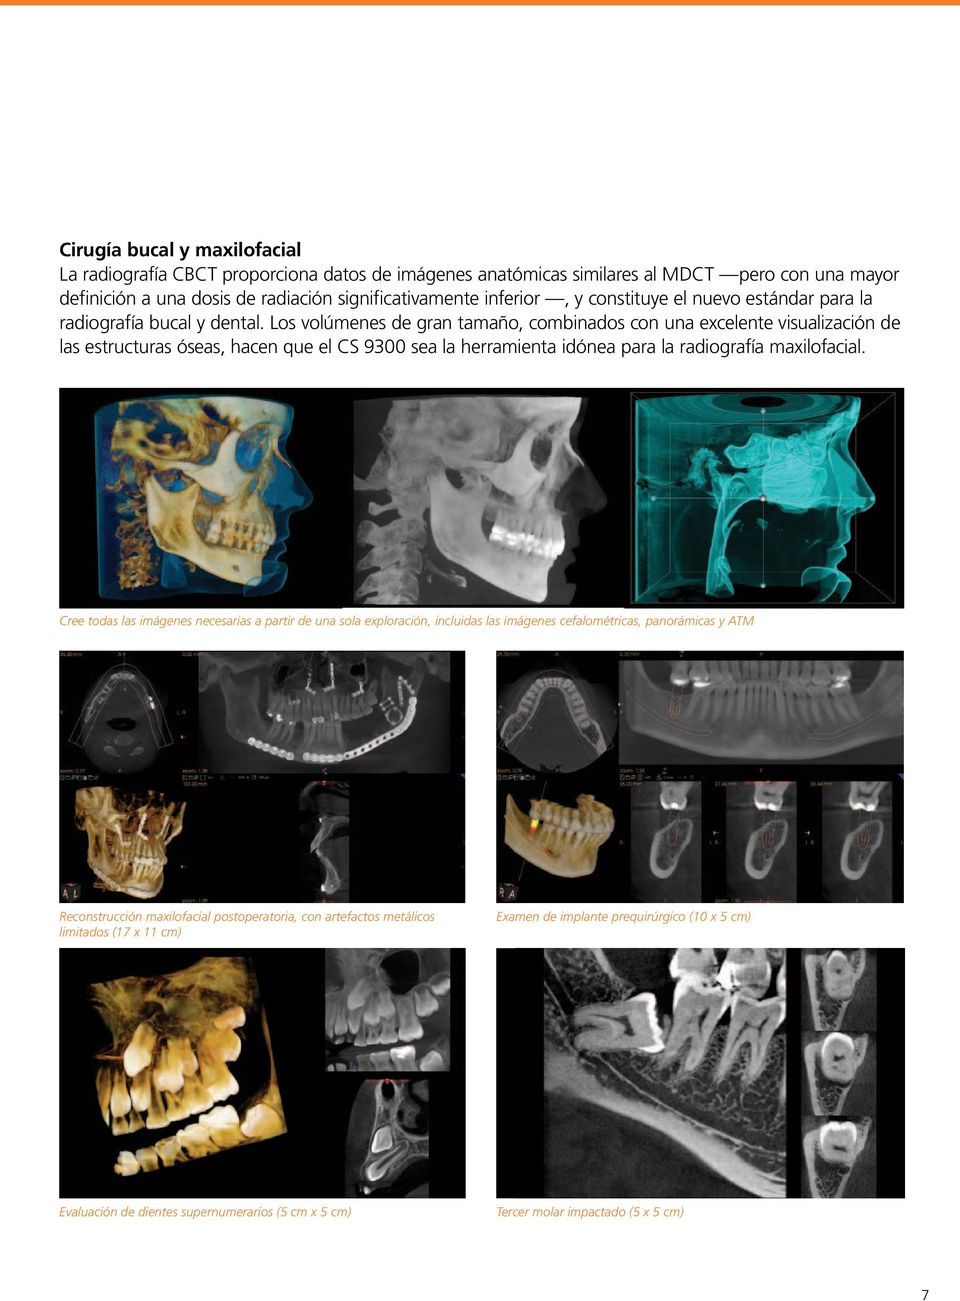 Los volúmenes de gran tamaño, combinados con una excelente visualización de las estructuras óseas, hacen que el CS 9300 sea la herramienta idónea para la radiografía maxilofacial.